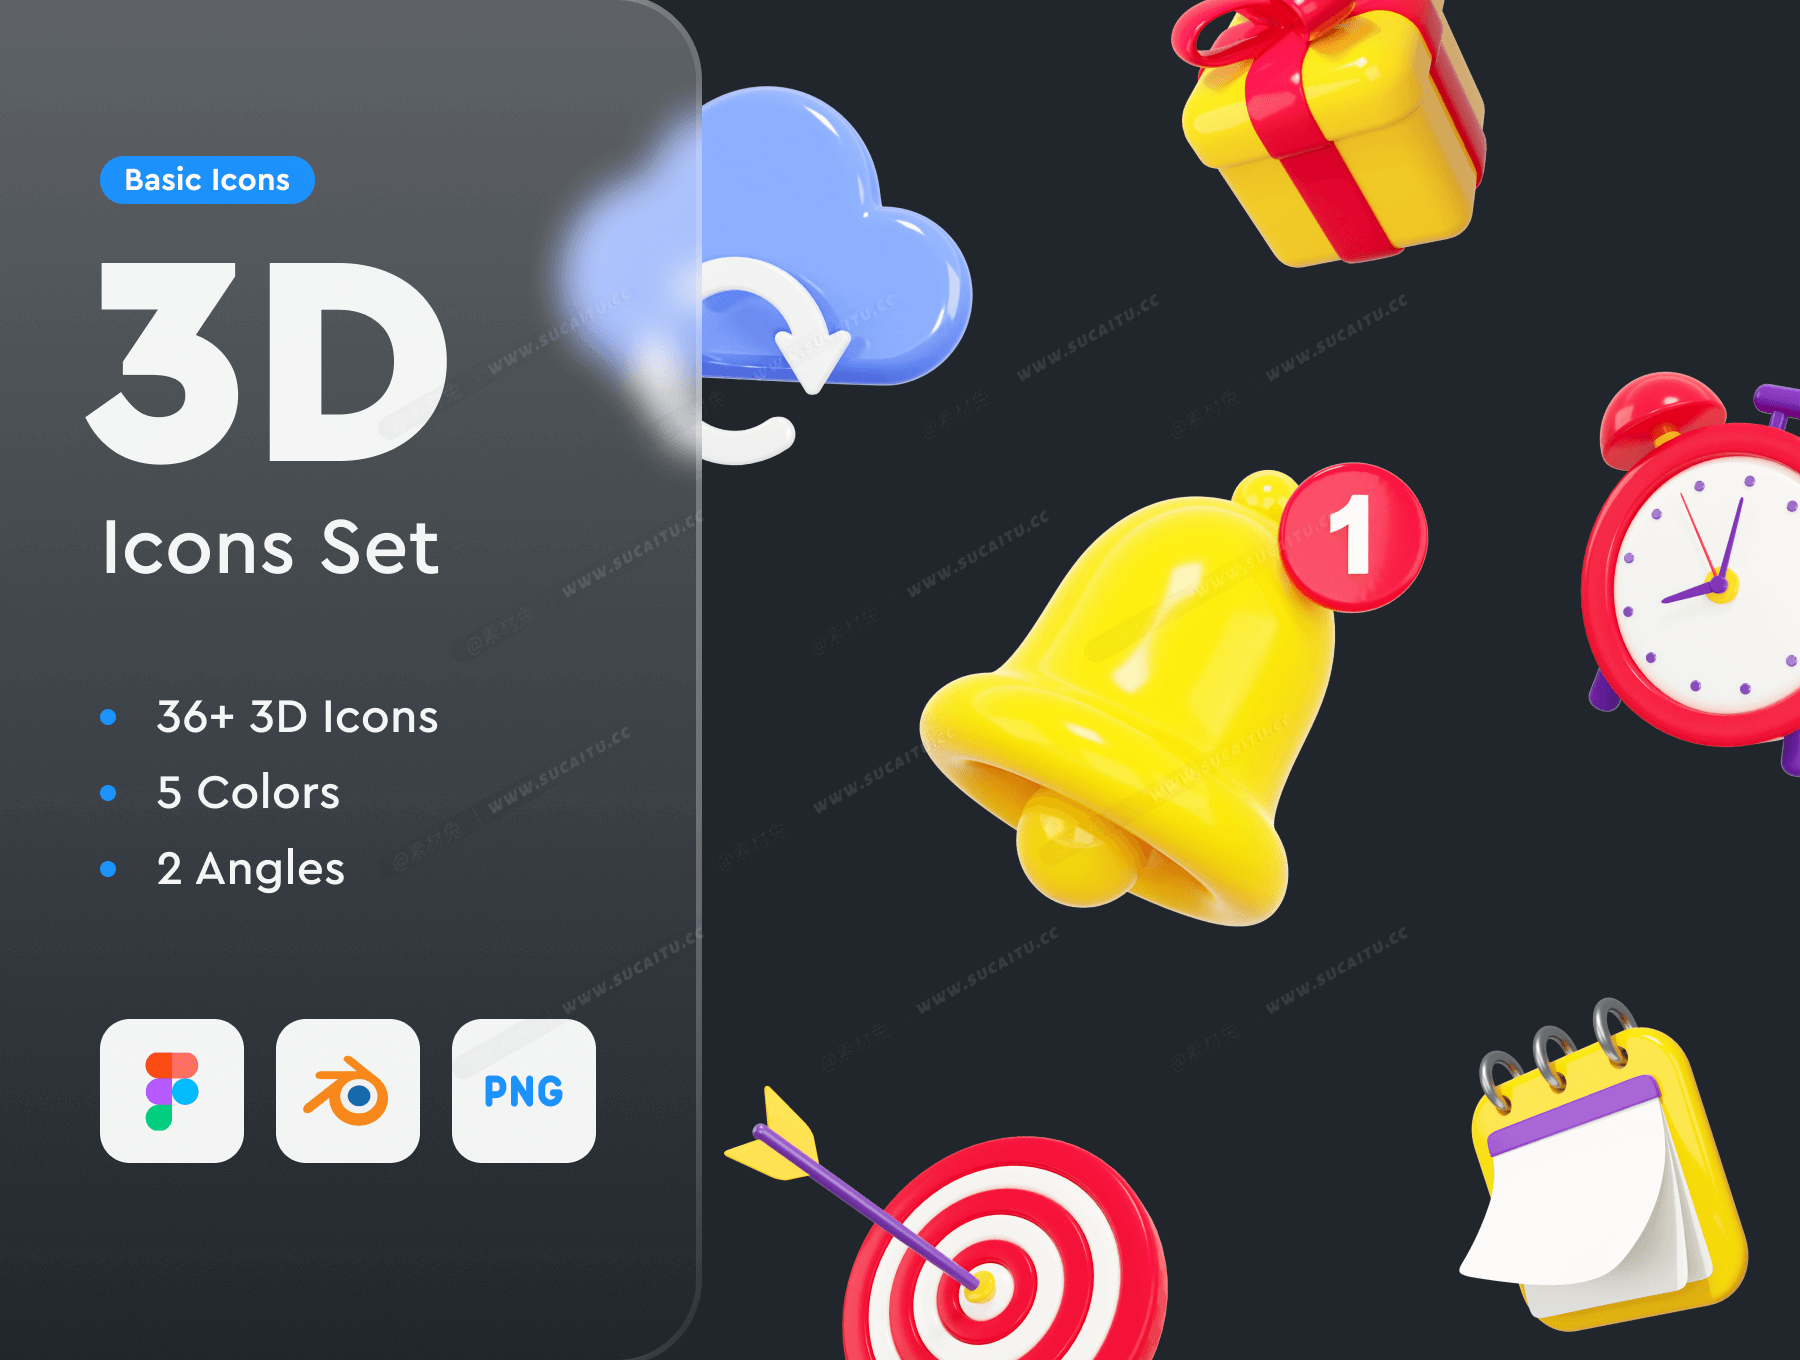 高质量Blender三维渲染基础3D图标插图素材合辑 Basic 3D Icons Set